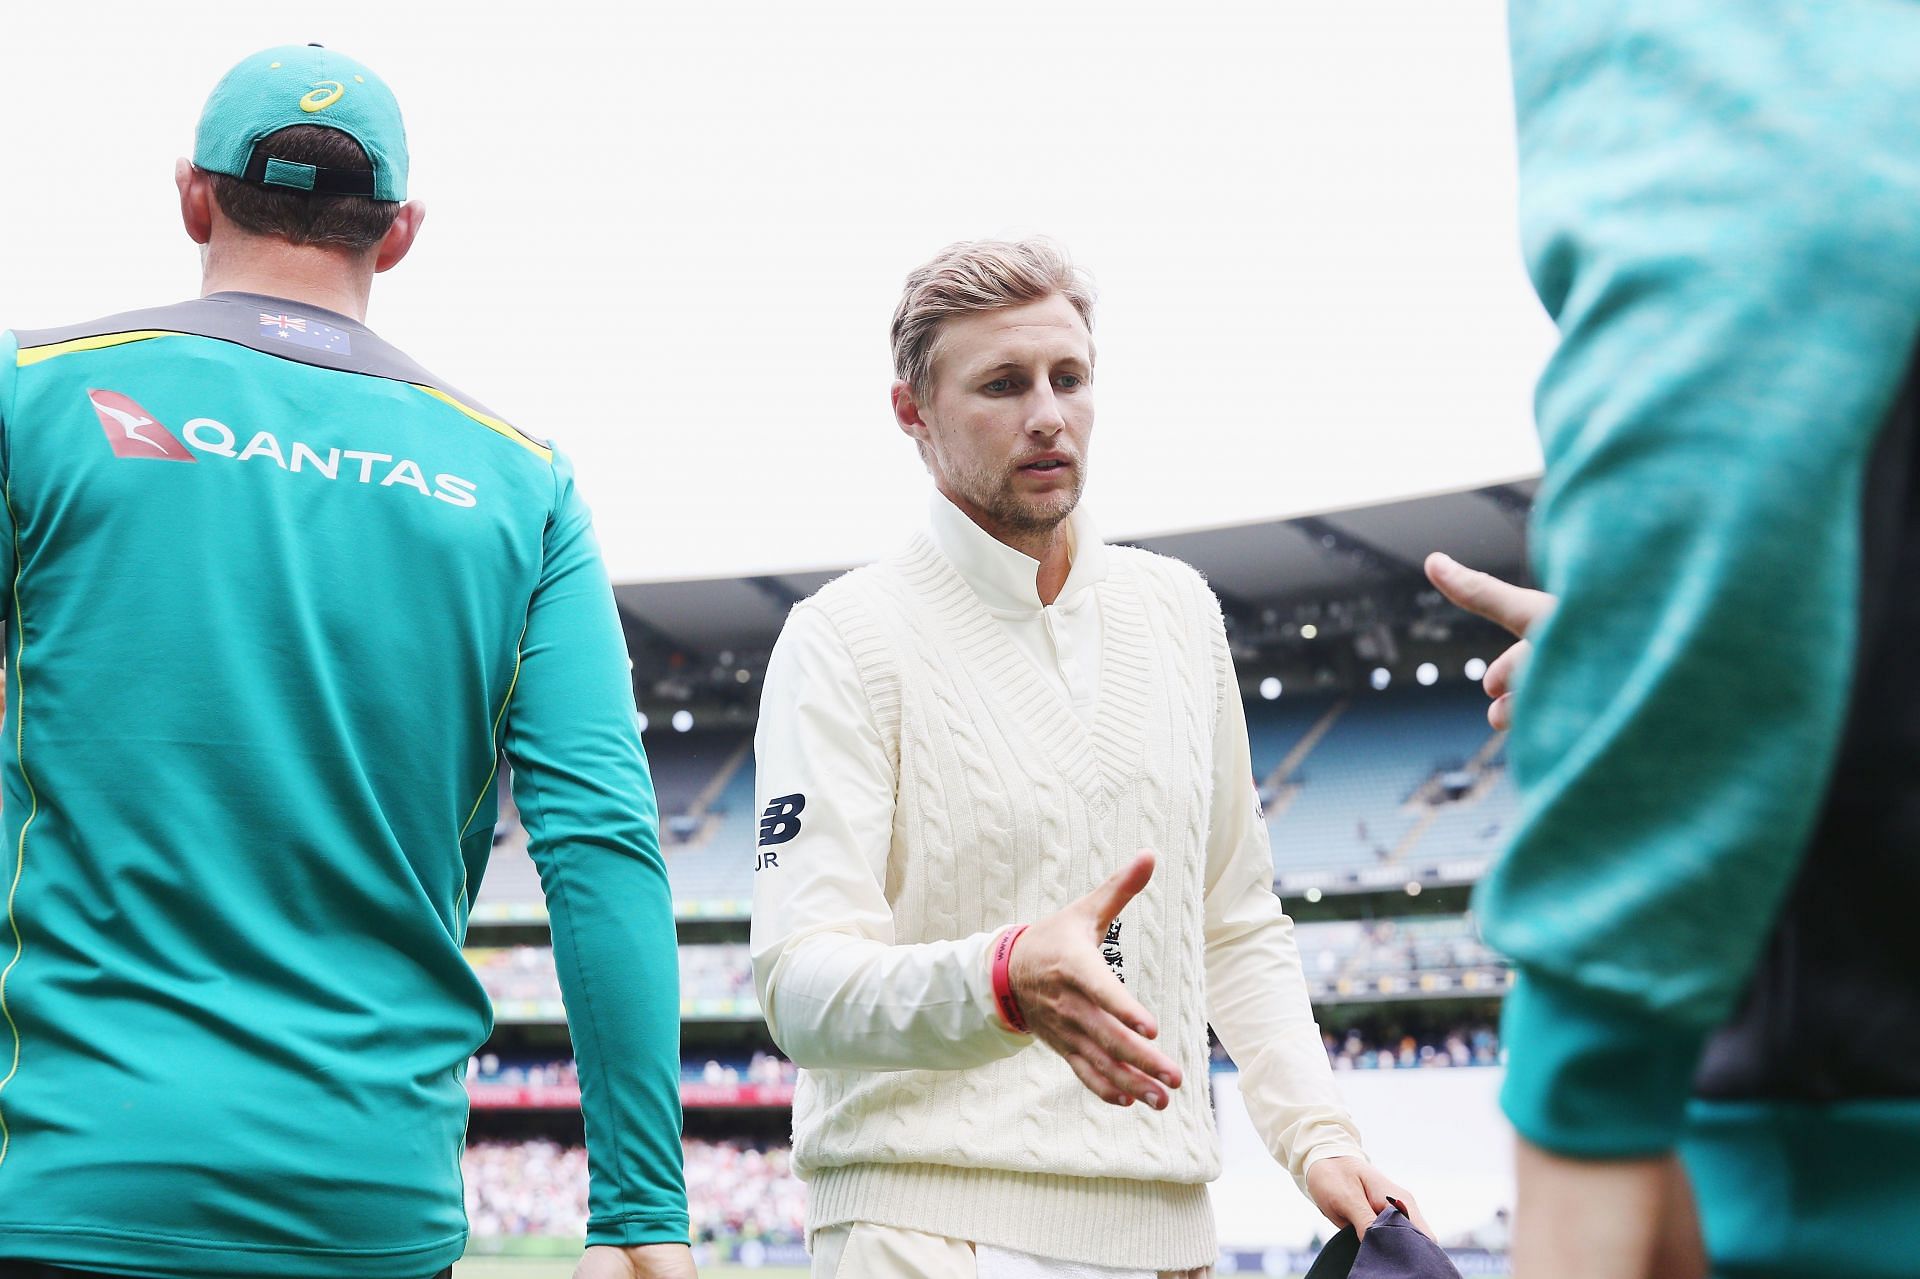 Australia v England - Fourth Test: Day 5